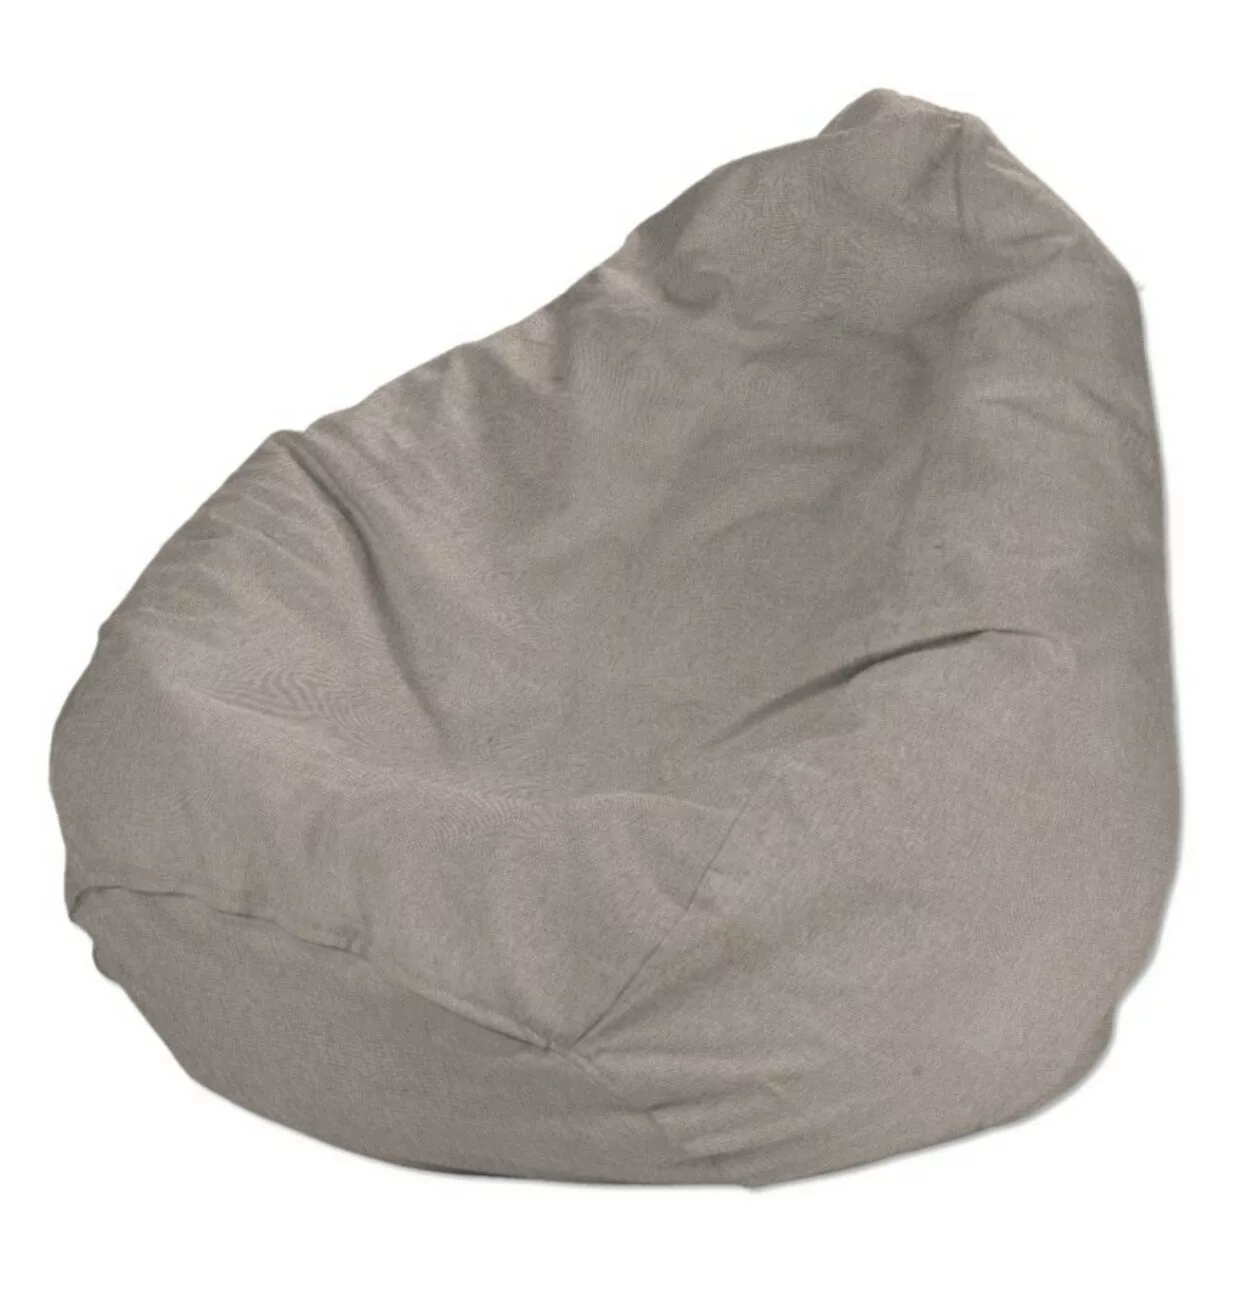 Bezug für Sitzsack, beige-grau, Bezug für Sitzsack Ø80 x 115 cm, Etna (705- günstig online kaufen